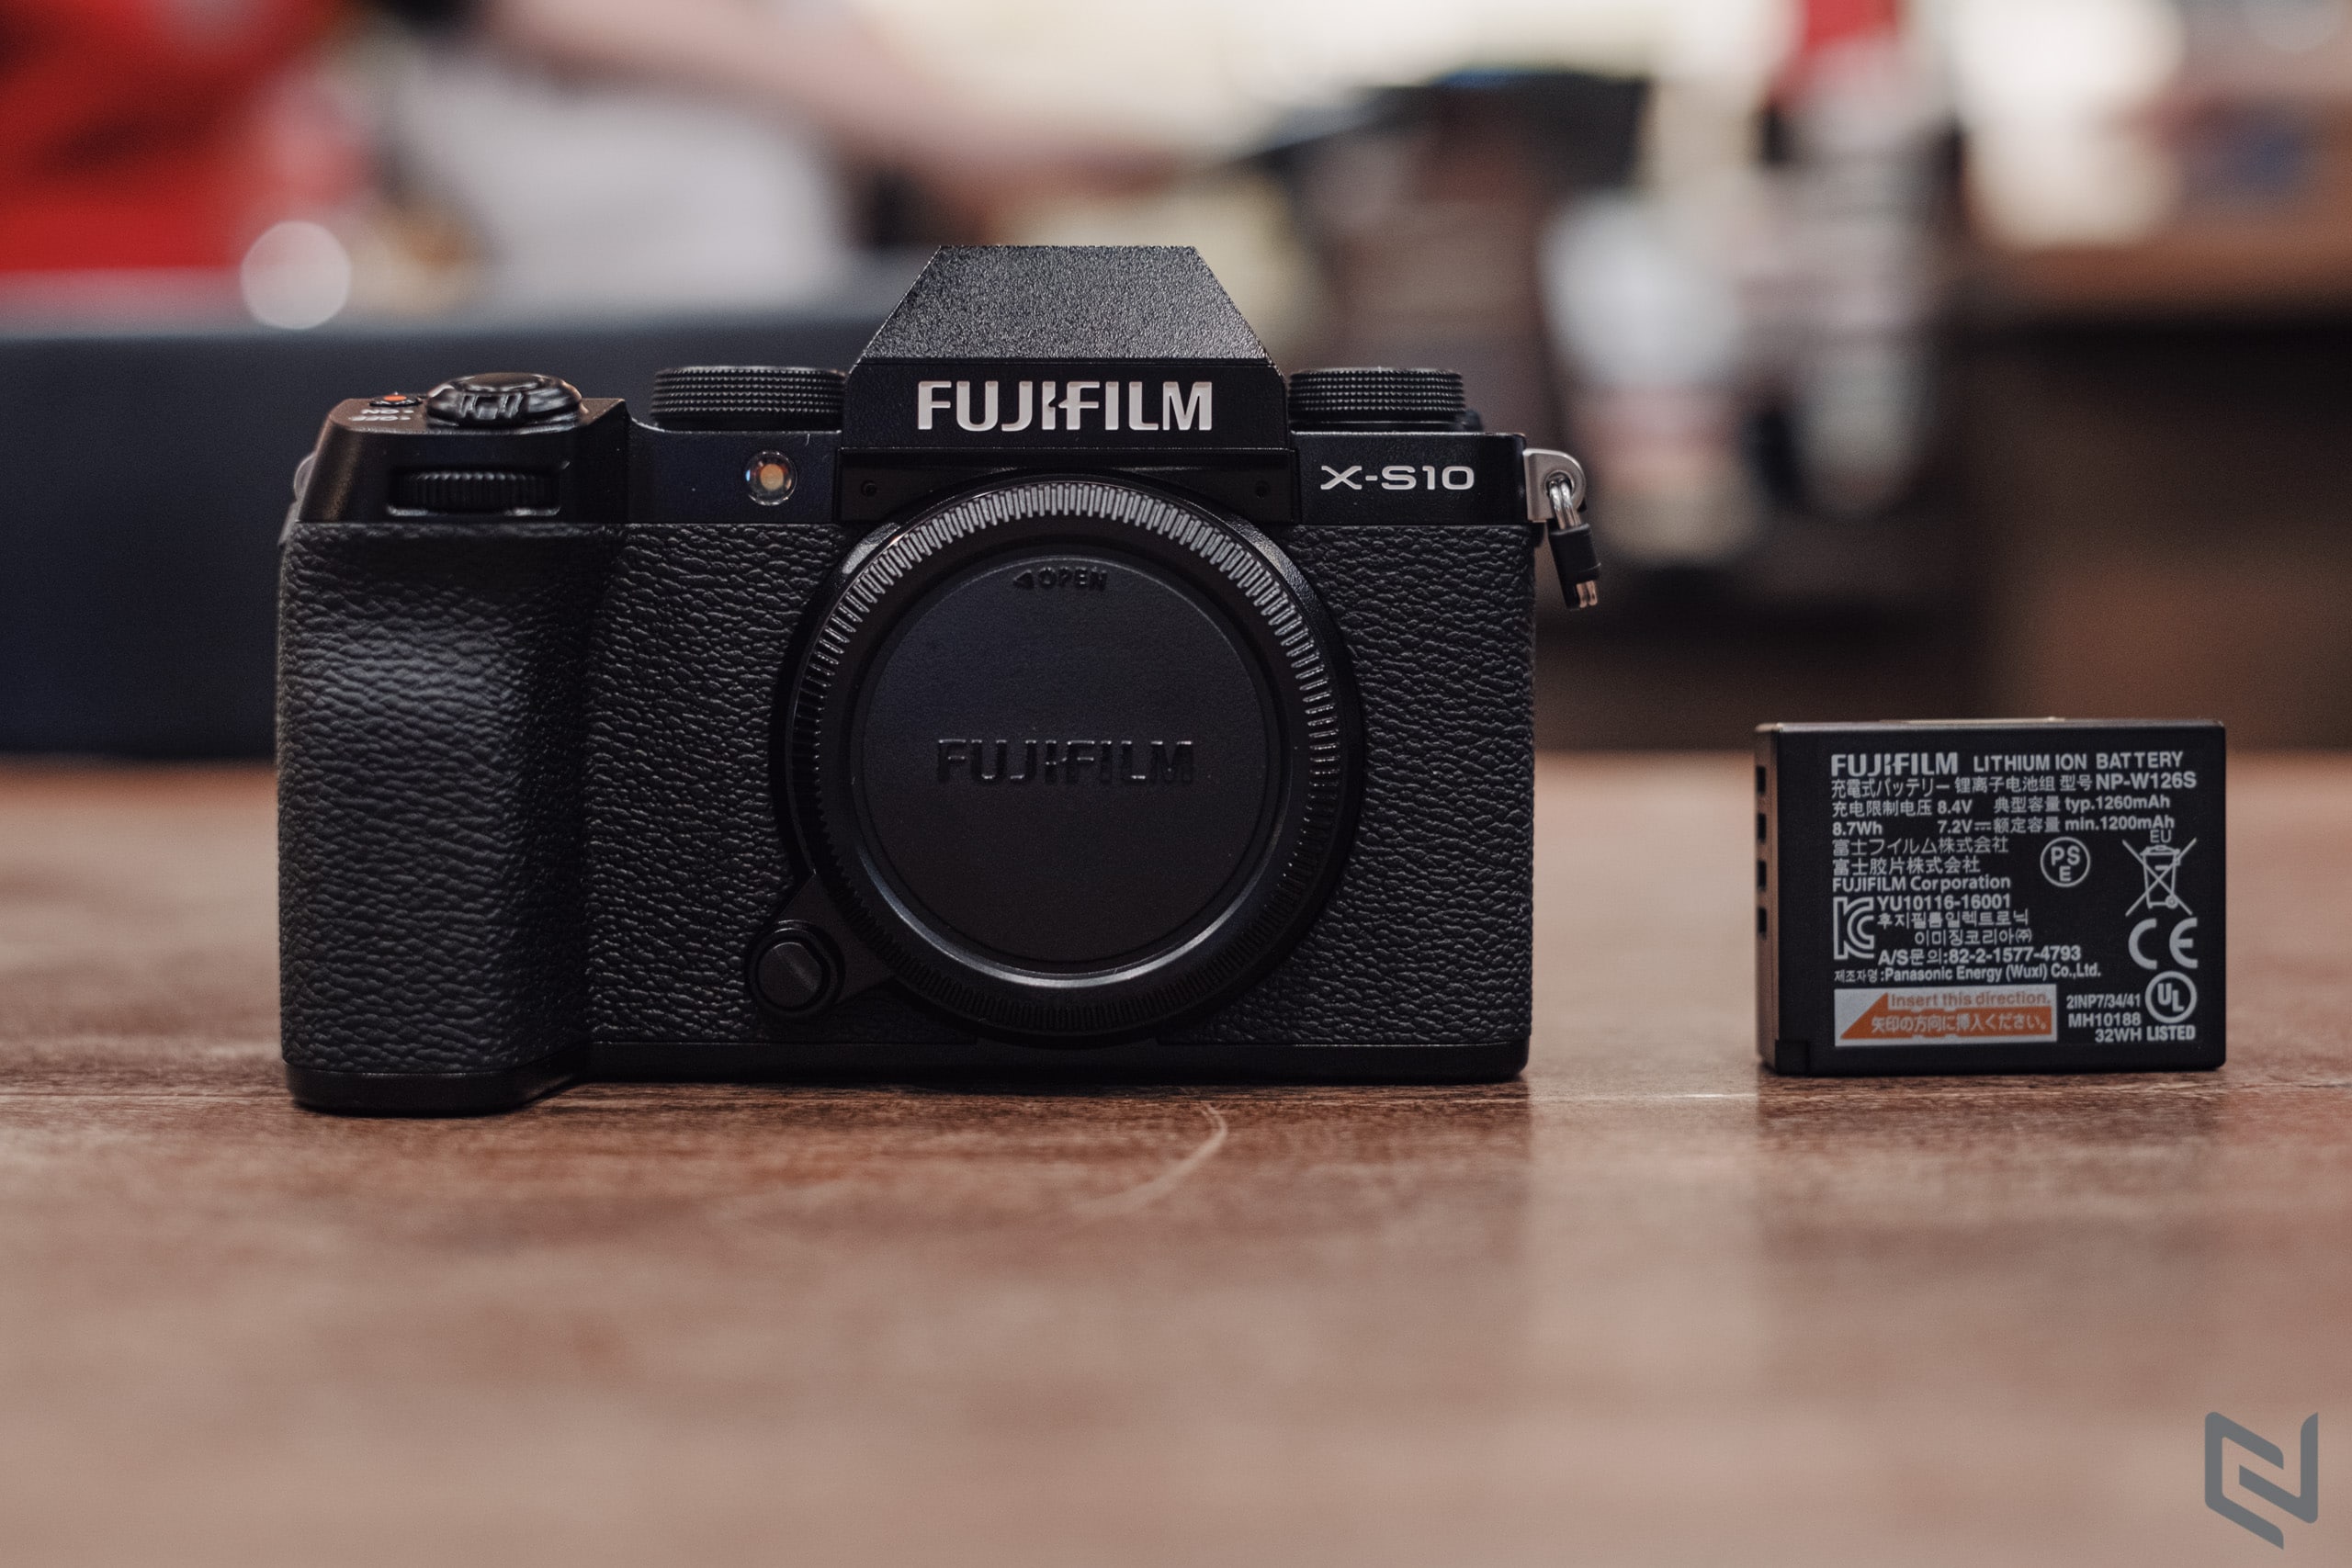 Mở hộp Fujifilm X-S10, đây là đam mê mới của mình!